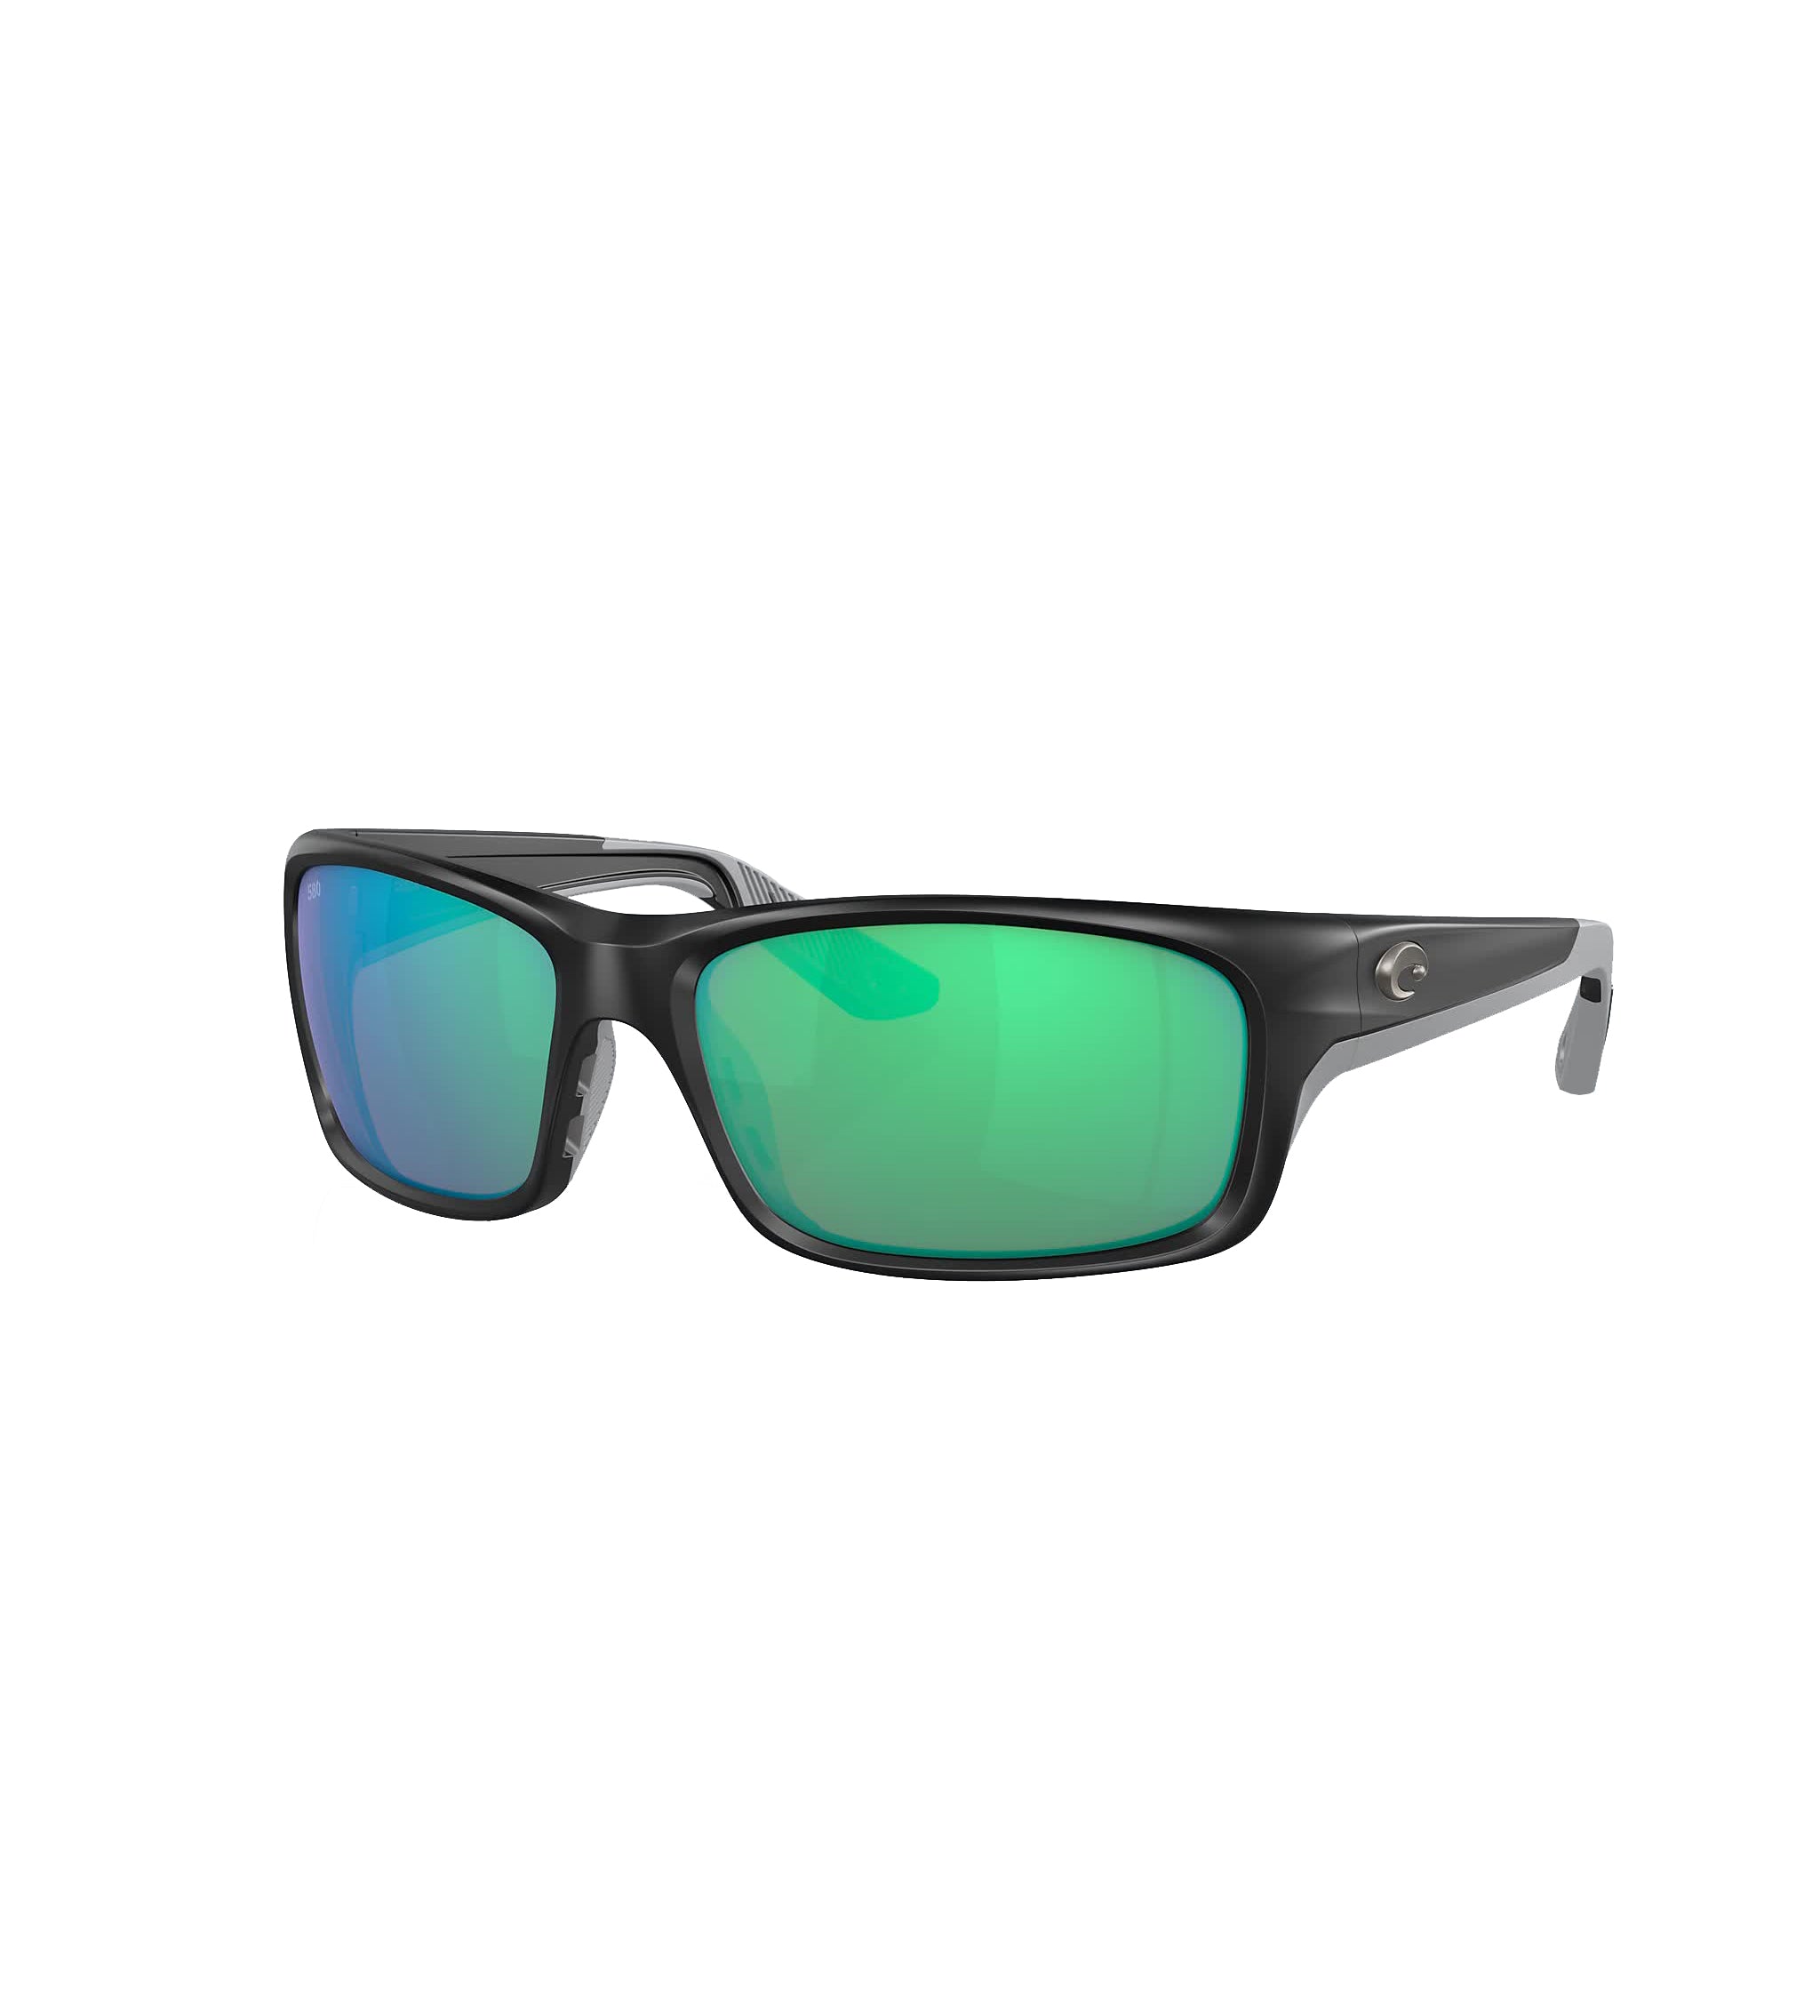 Costa Del Mar Jose Pro Polarized Sunglasses MatteBlack GreenMirror580G